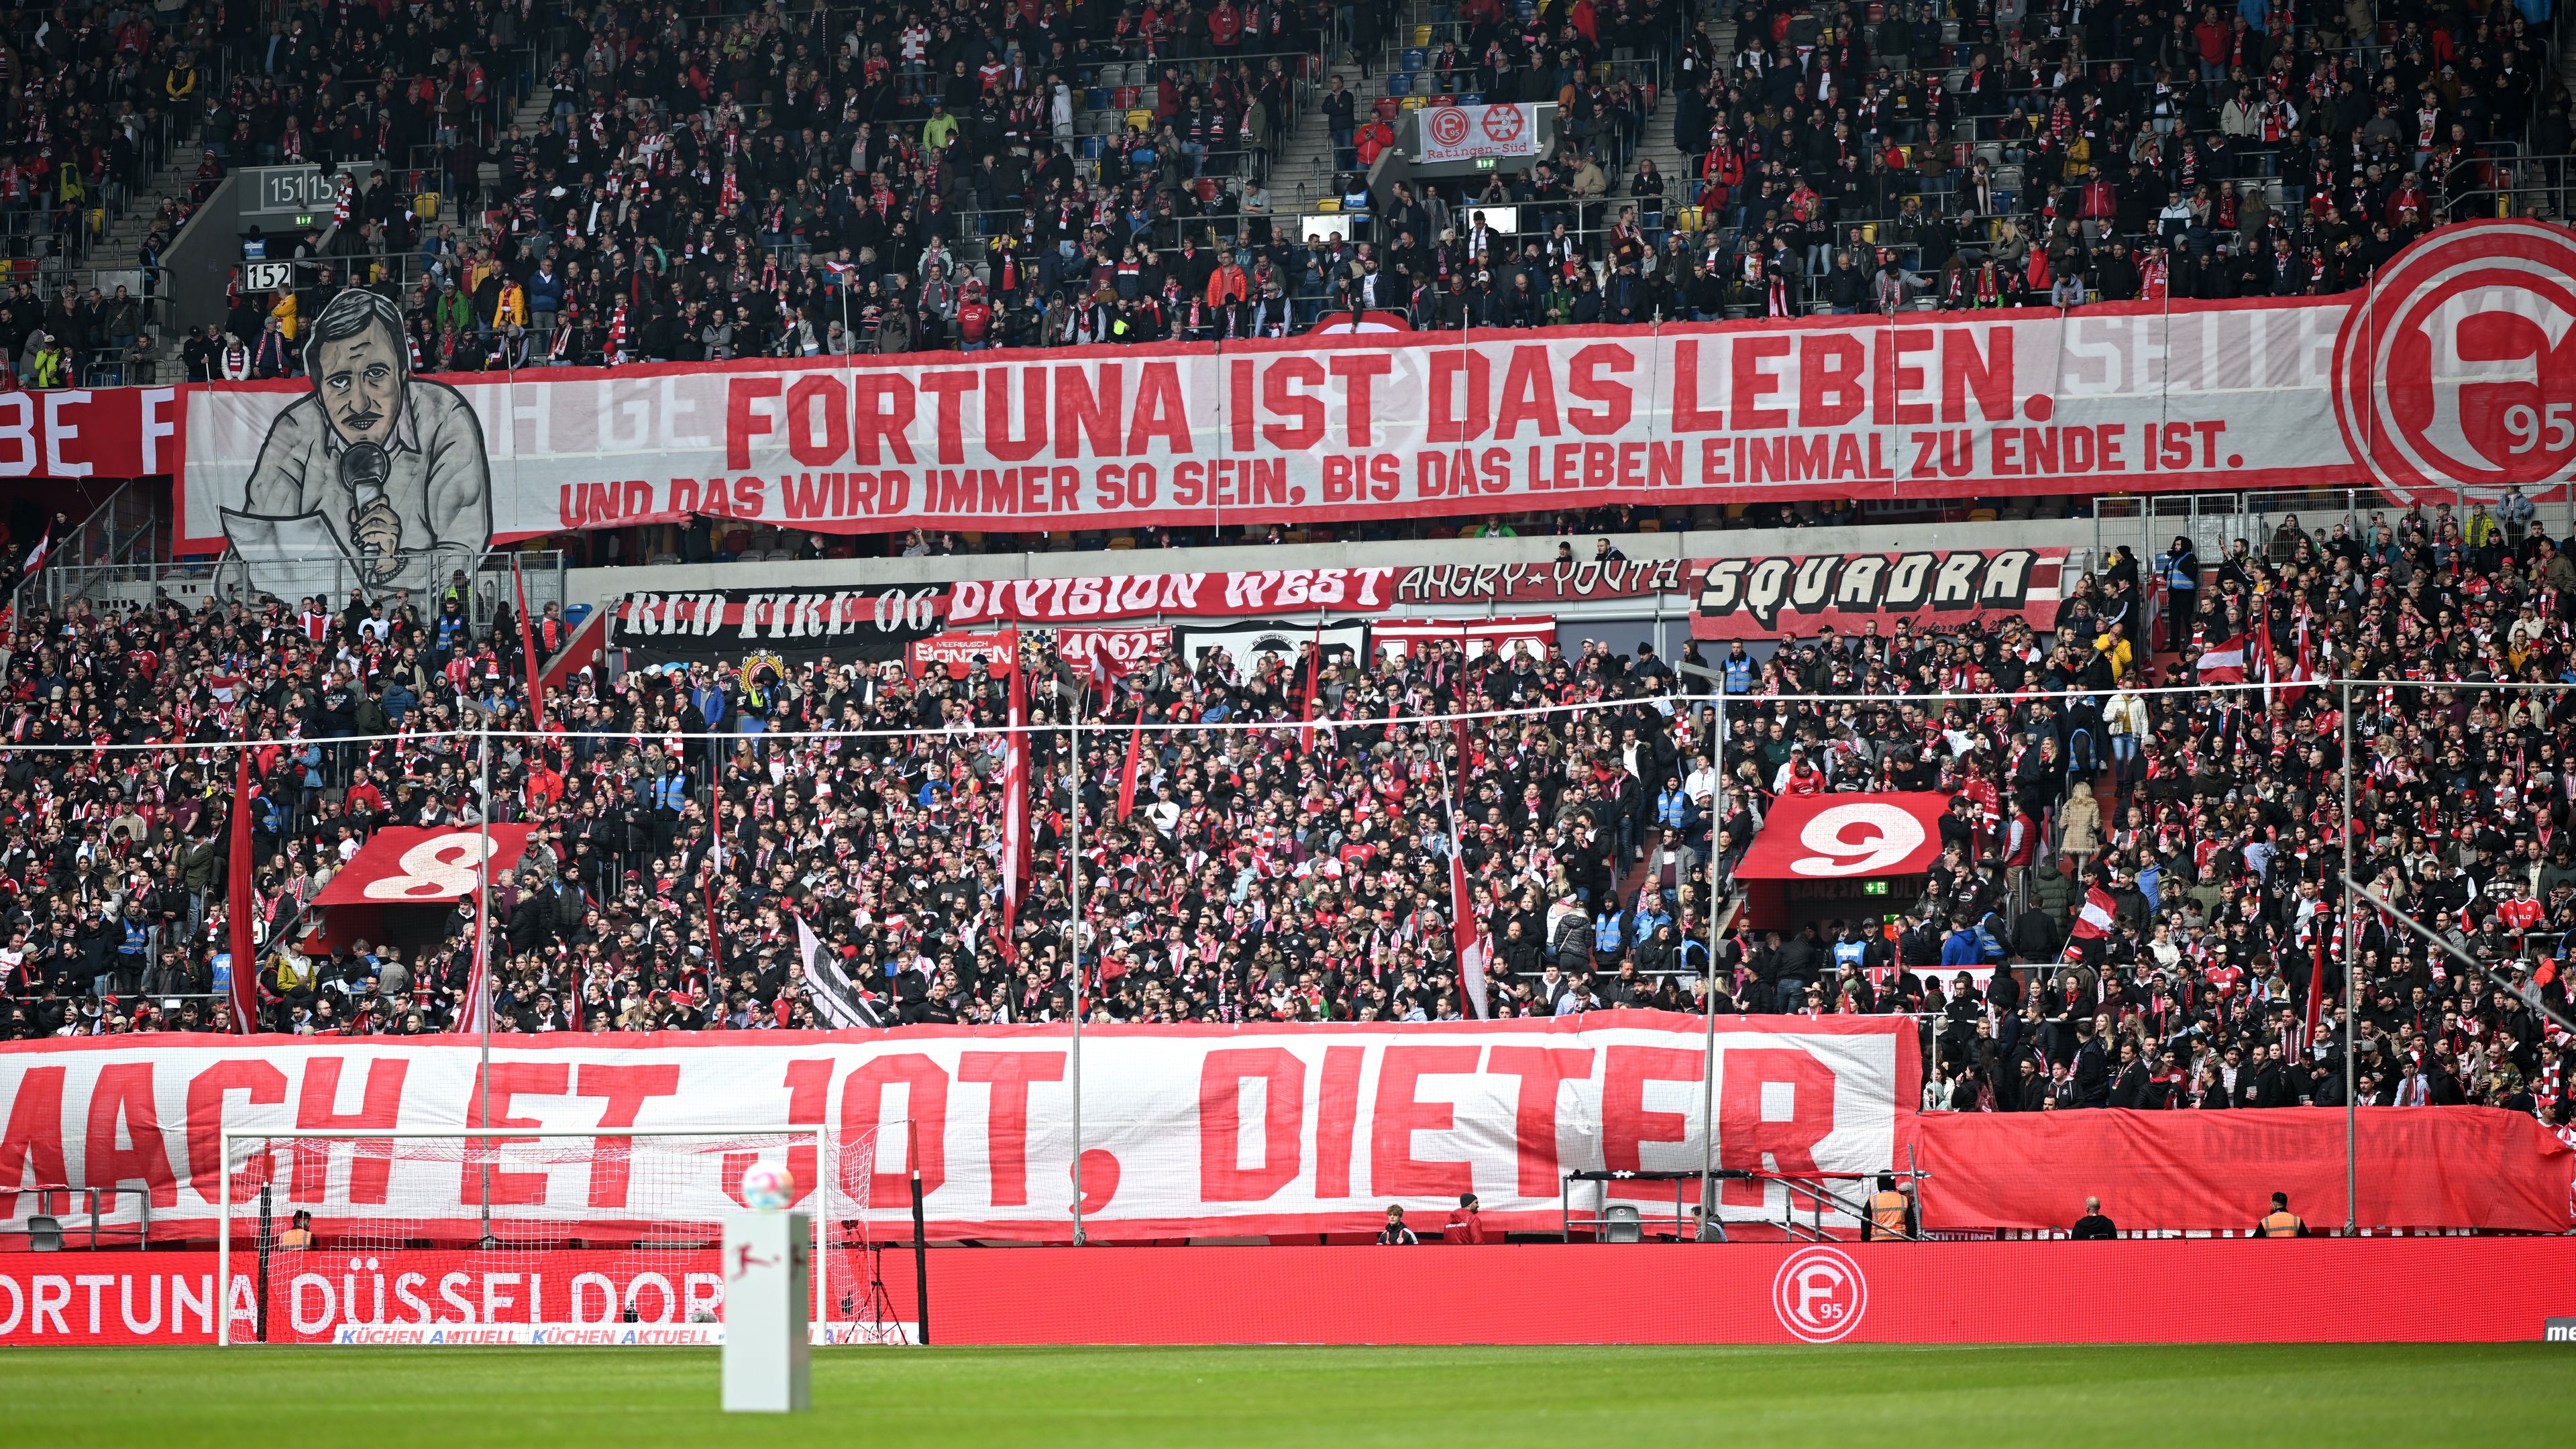 Újítást tervez a Fortuna Düsseldorf, a szurkolók a jövőben ingyen meccsjegyhez juthatnak